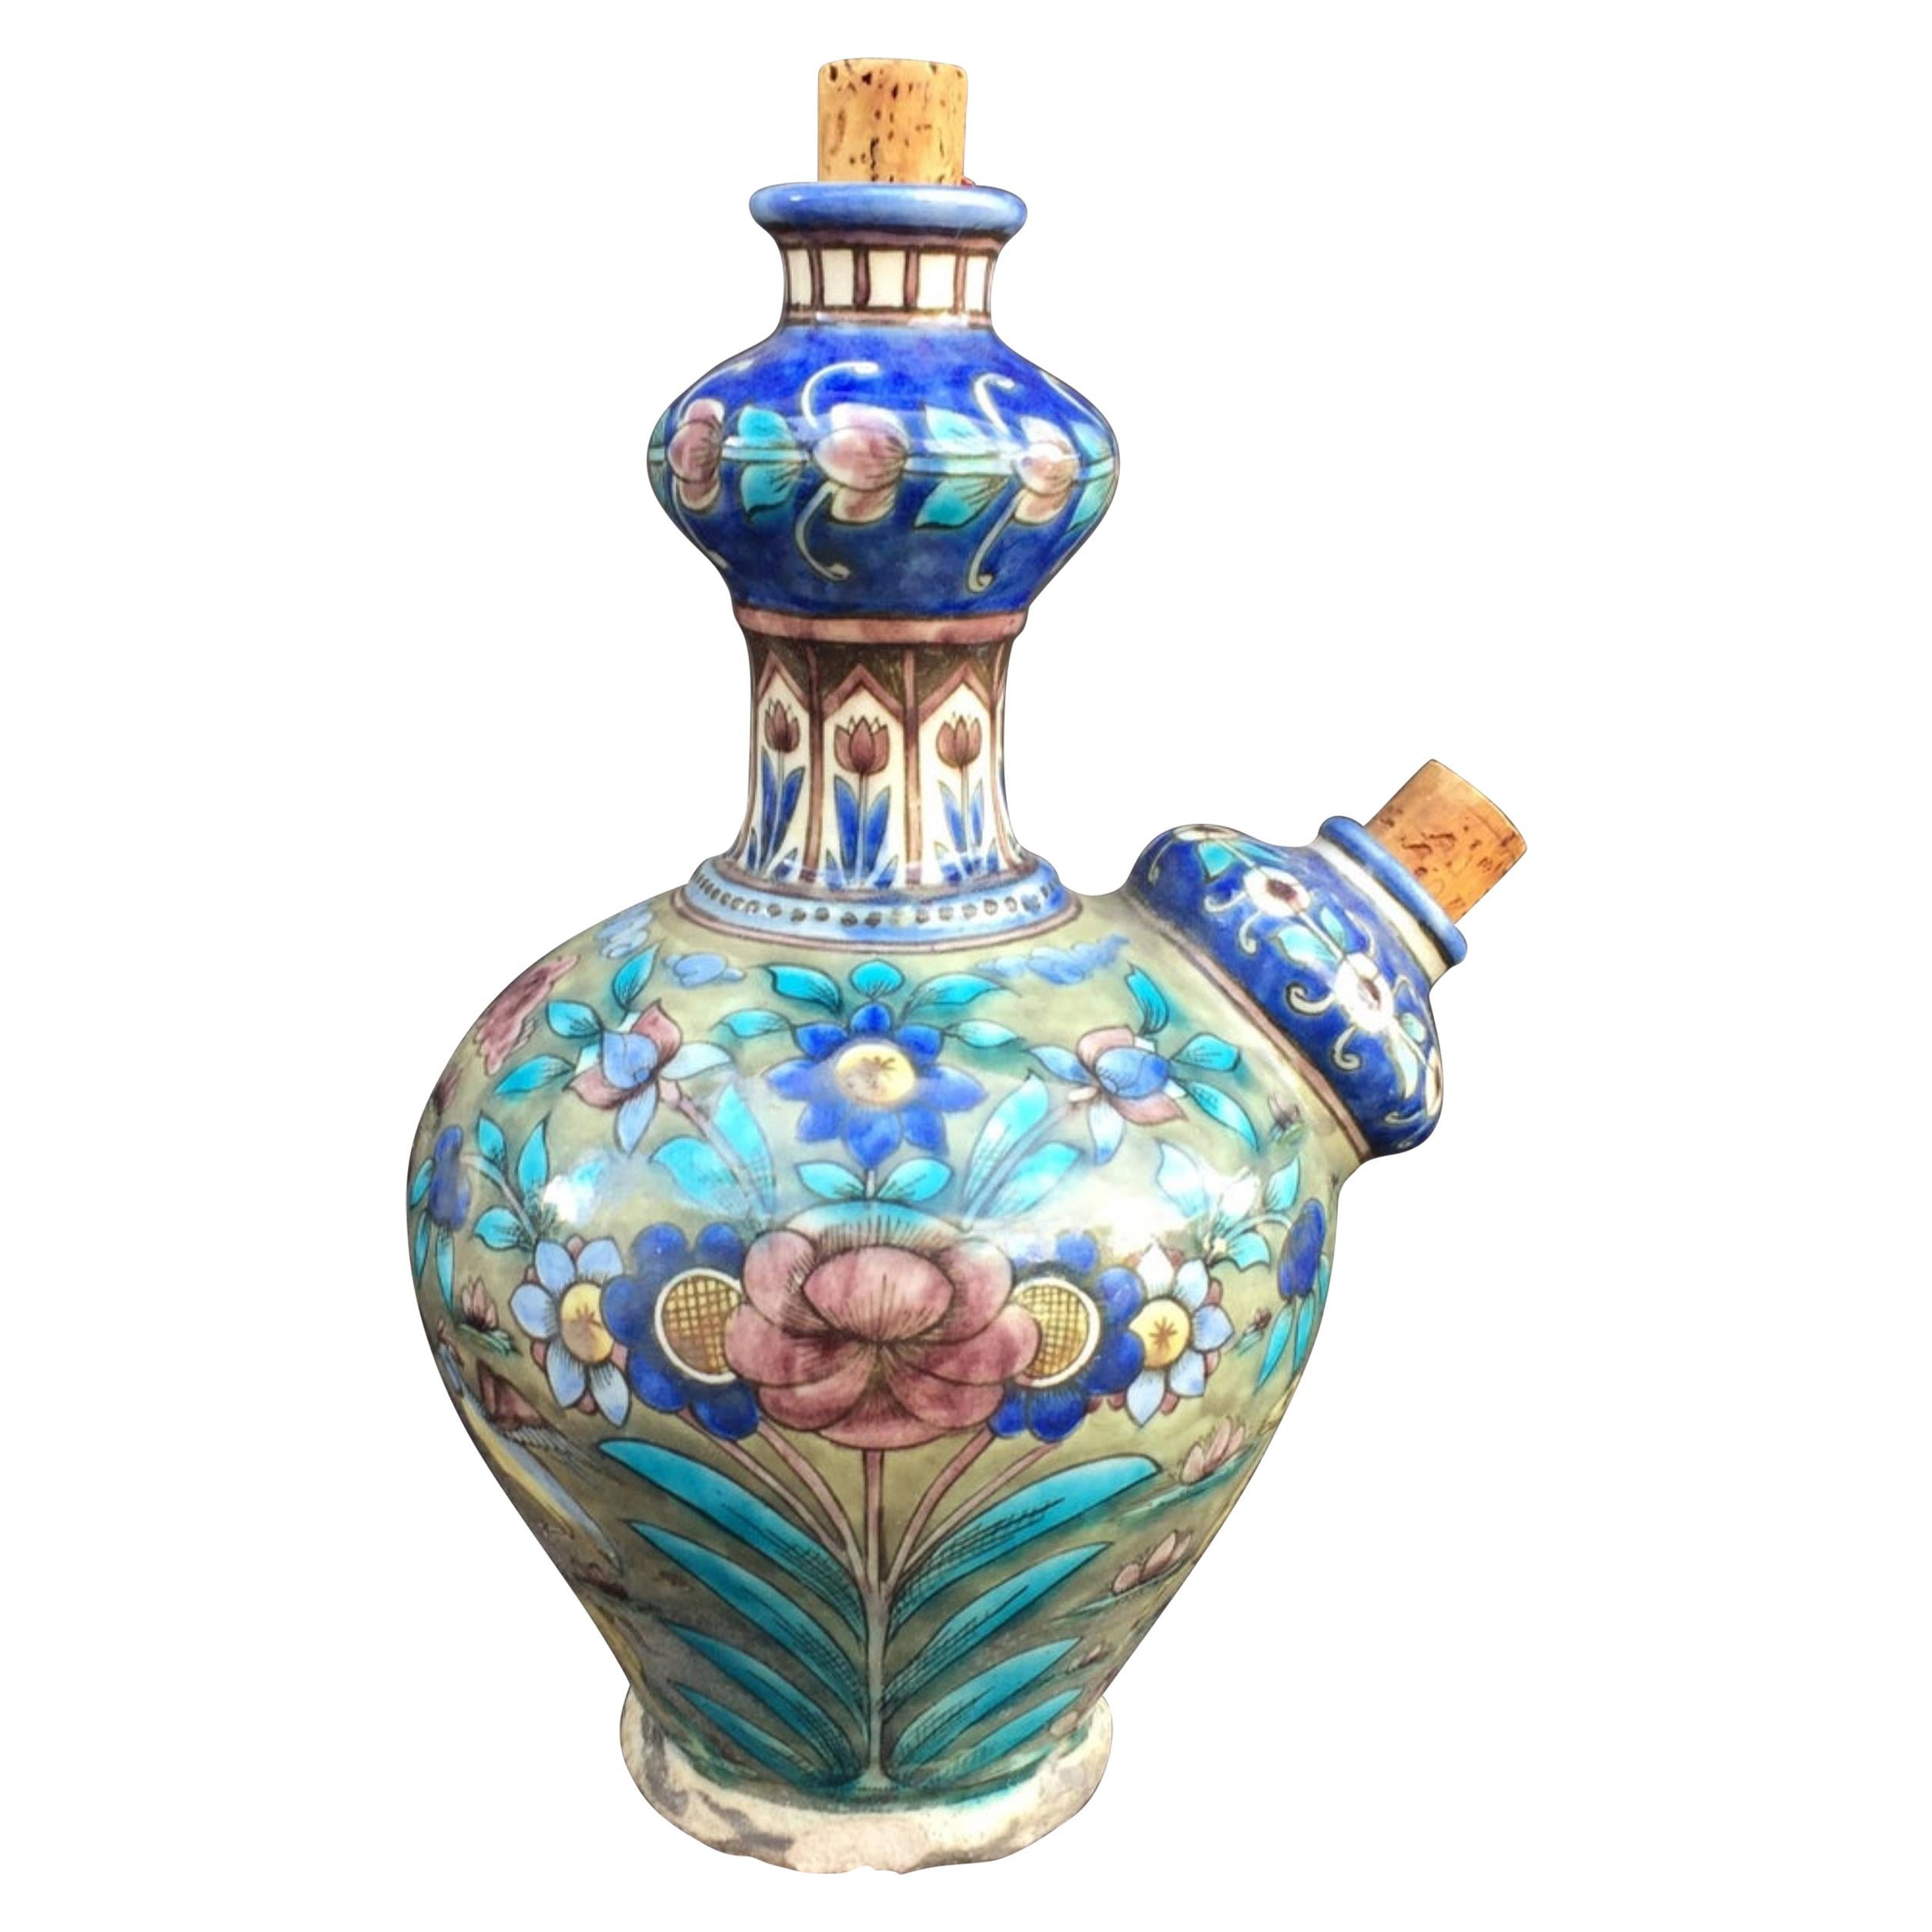 Islamic Iznik Keramik-Keramik-Krug Kendi aus dem 17. Jahrhundert